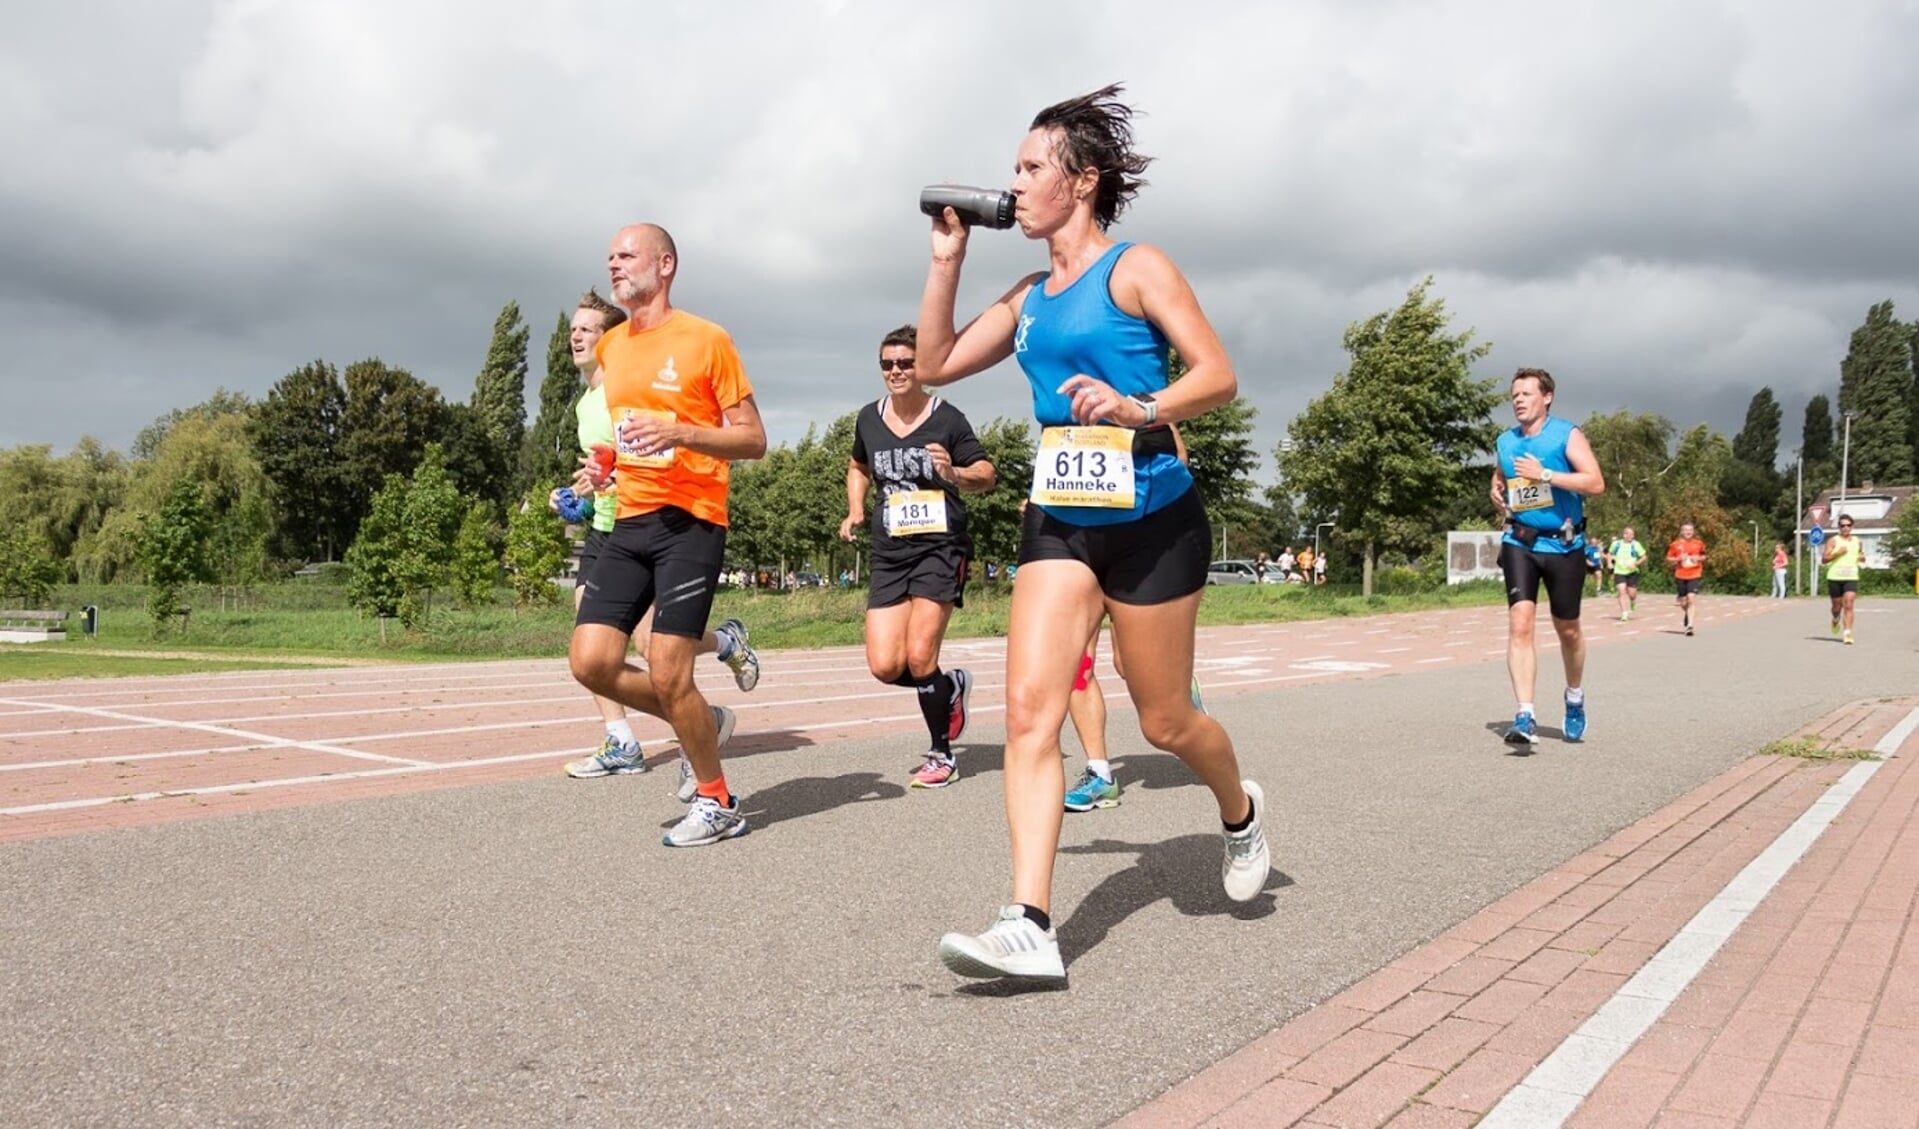 Deelnemers aan de Halve Marathon Oostland van vorig jaar (foto: Marchel Snoei)